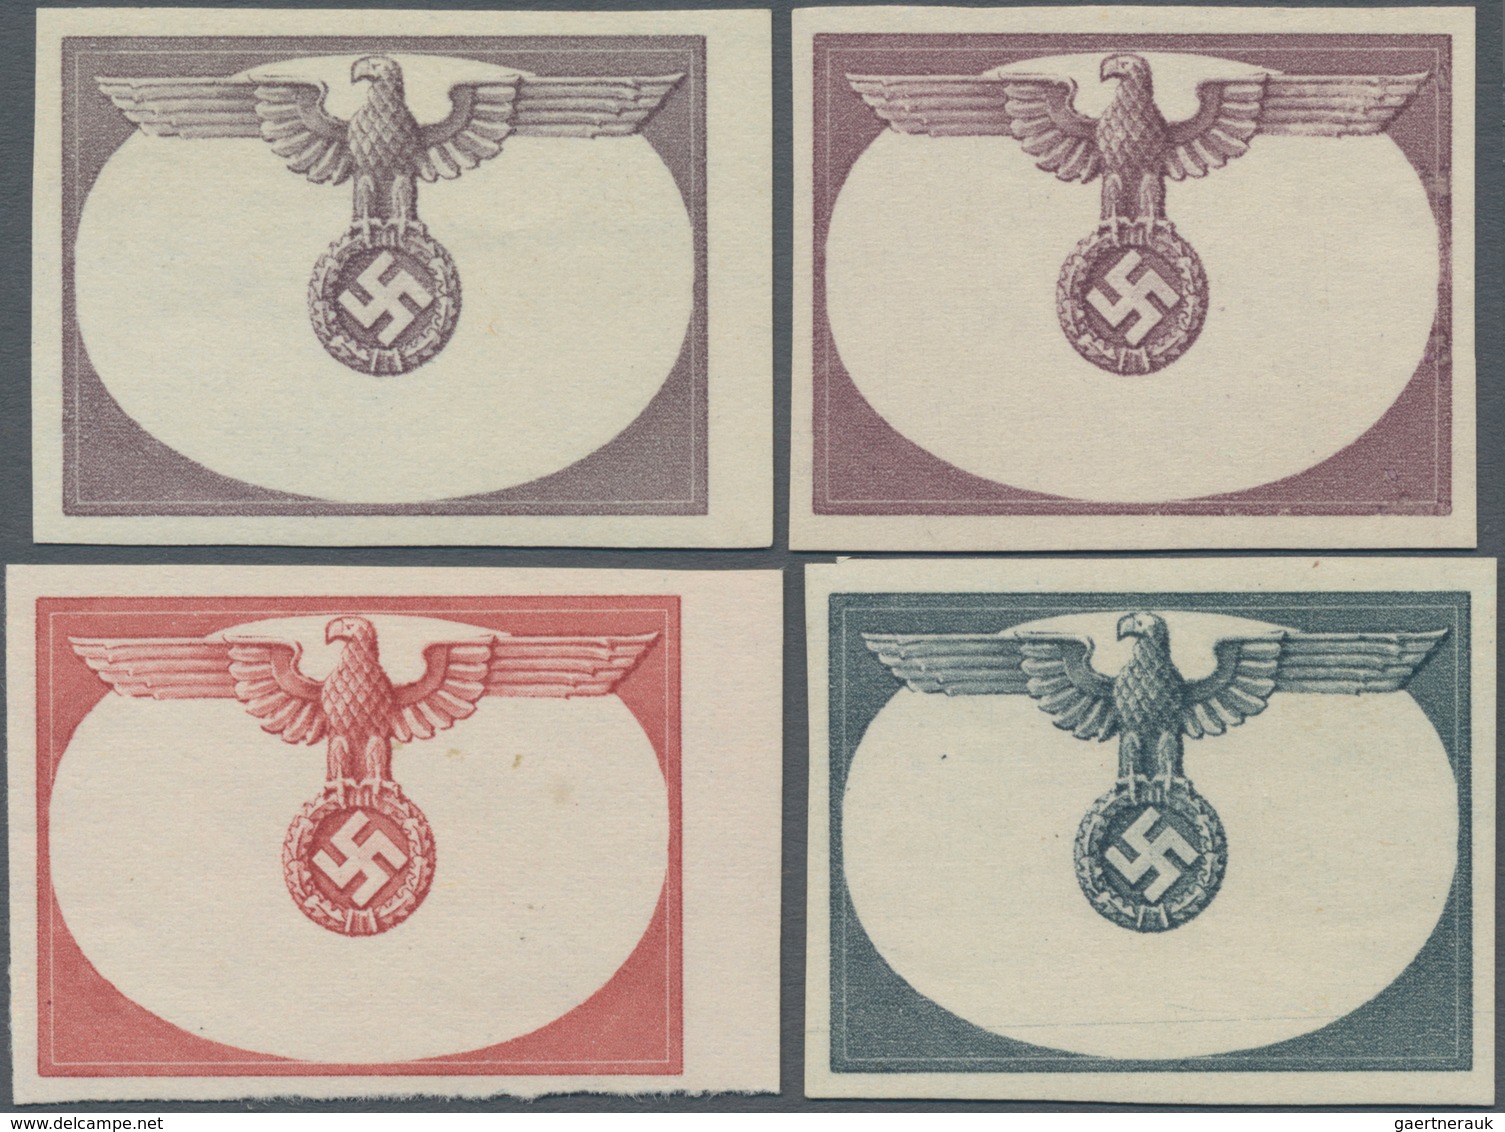 Dt. Besetzung II WK - Generalgouvernement - Dienstmarken: 1940. Lot Mit 4 Versch. Ungezähnten Phasen - Bezetting 1938-45